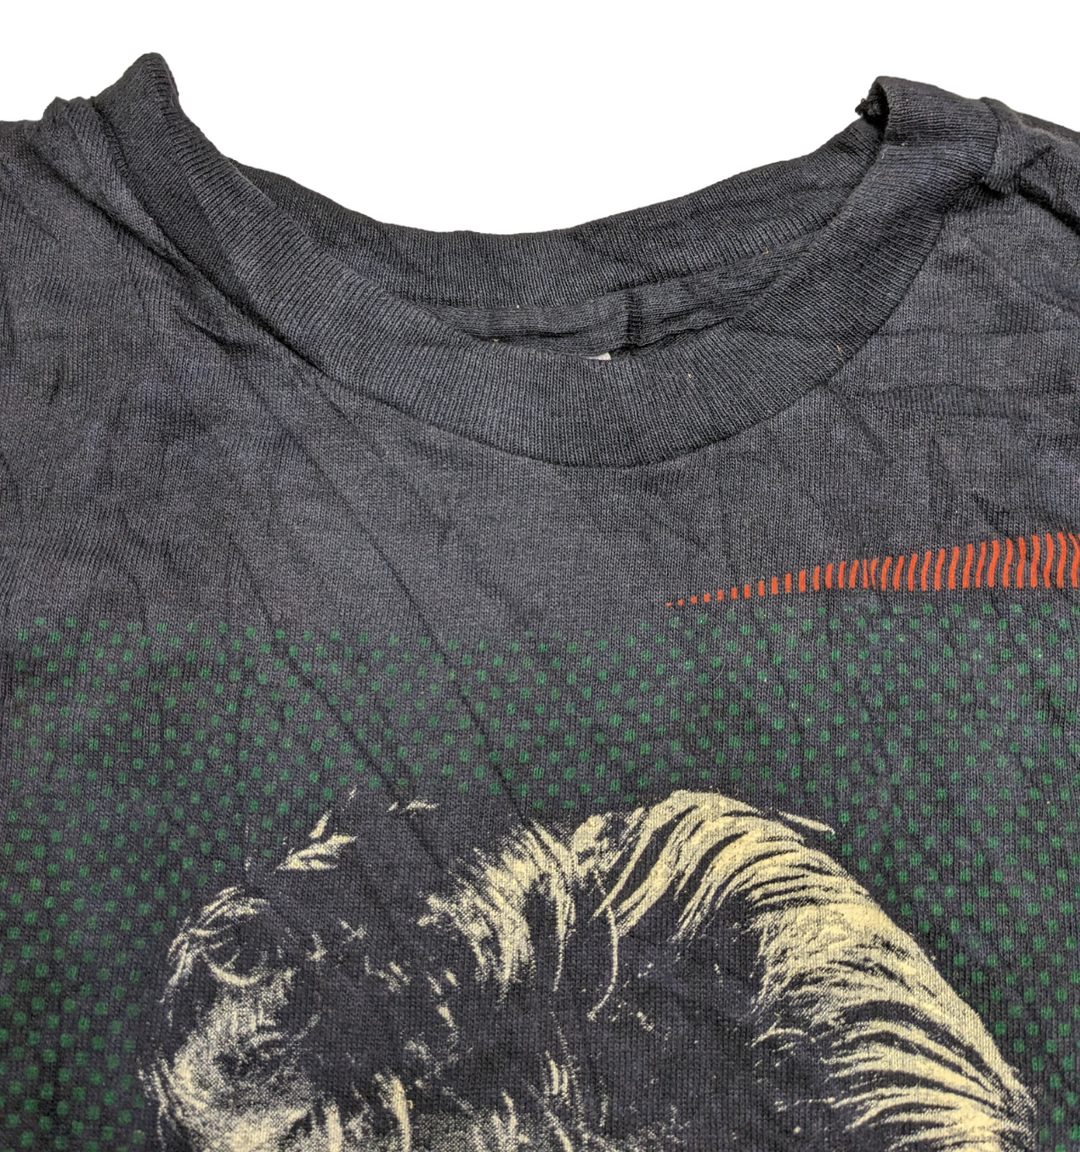 Vintage 1985 Glenn Frey T-Shirt 1 pc 1 lb D0416222